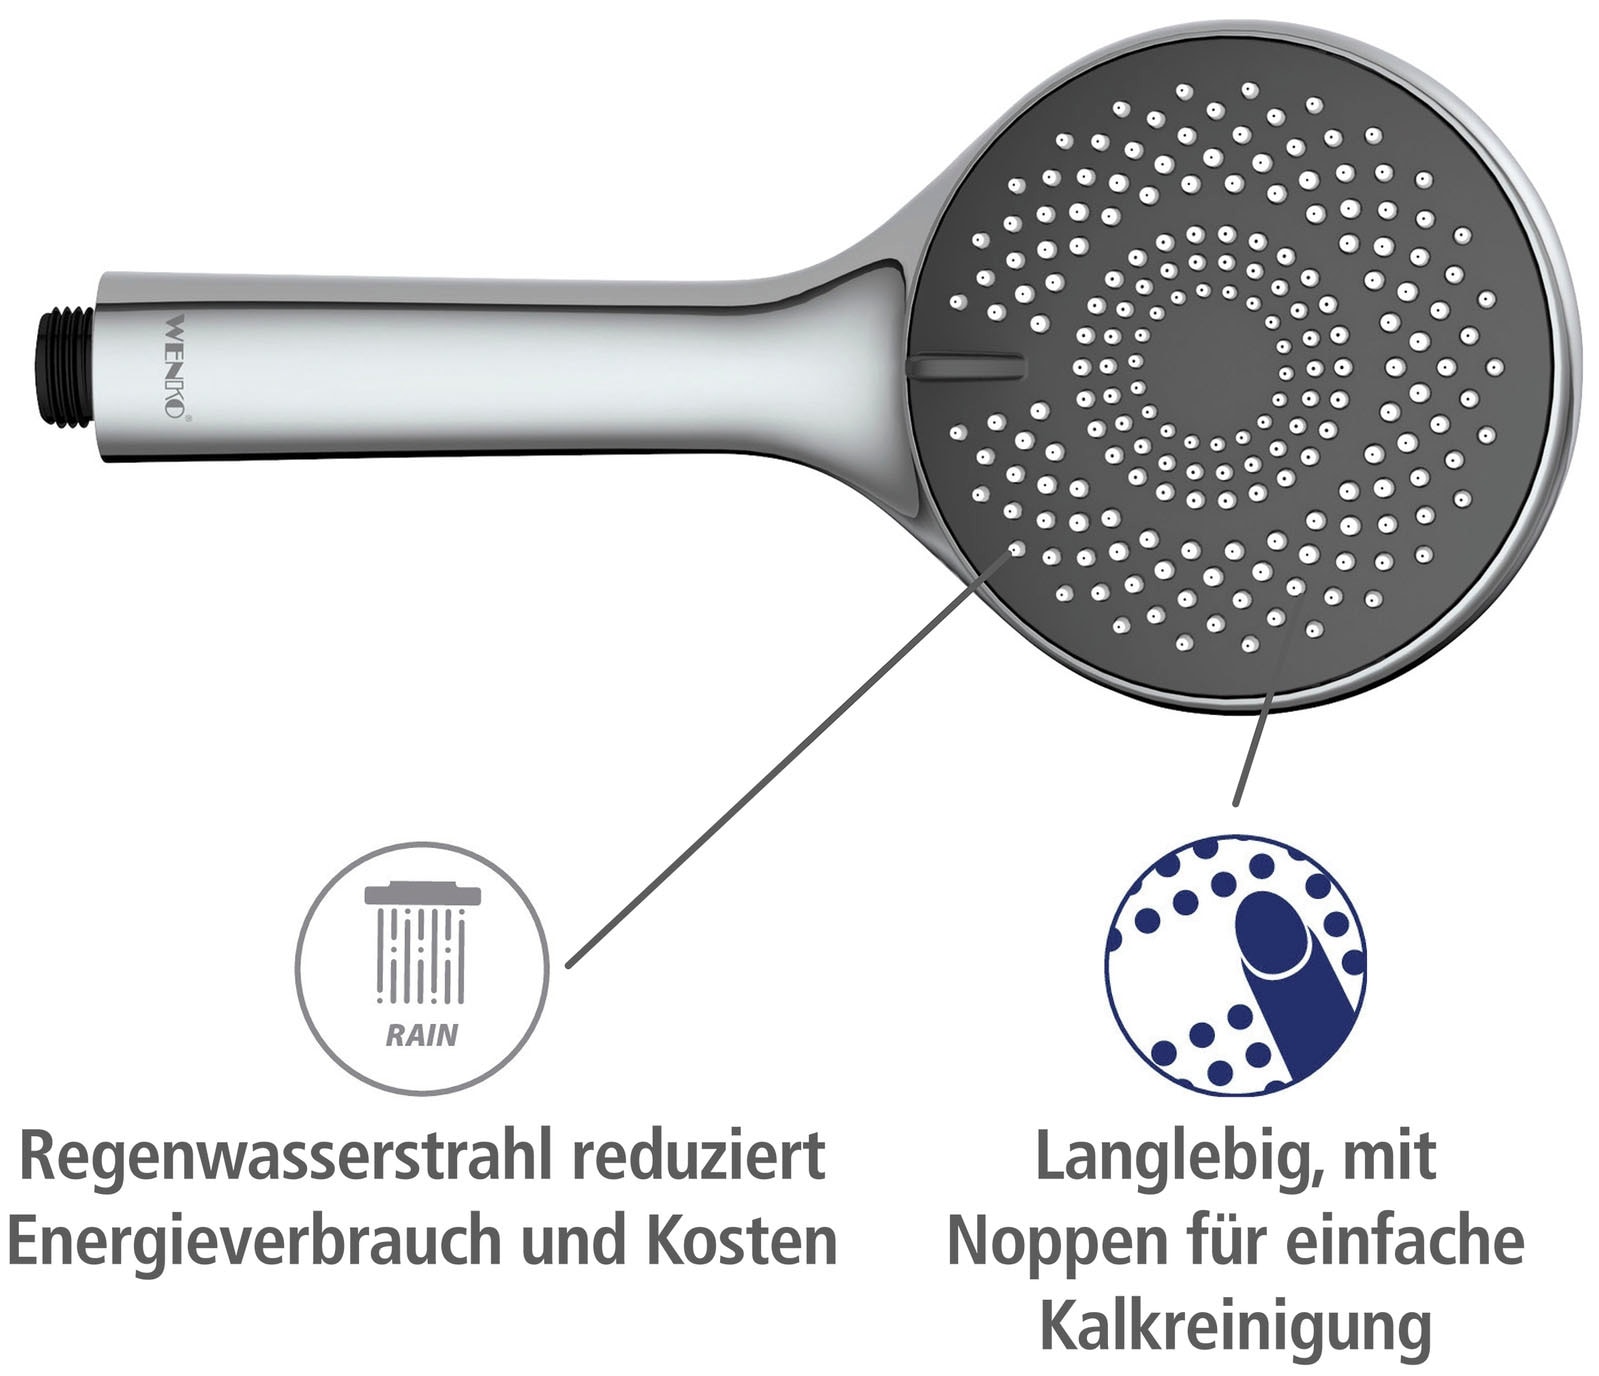 WENKO Handbrause »Watersaving System«, Duschkopf Watersaving Grau, Durchmesser 11 cm